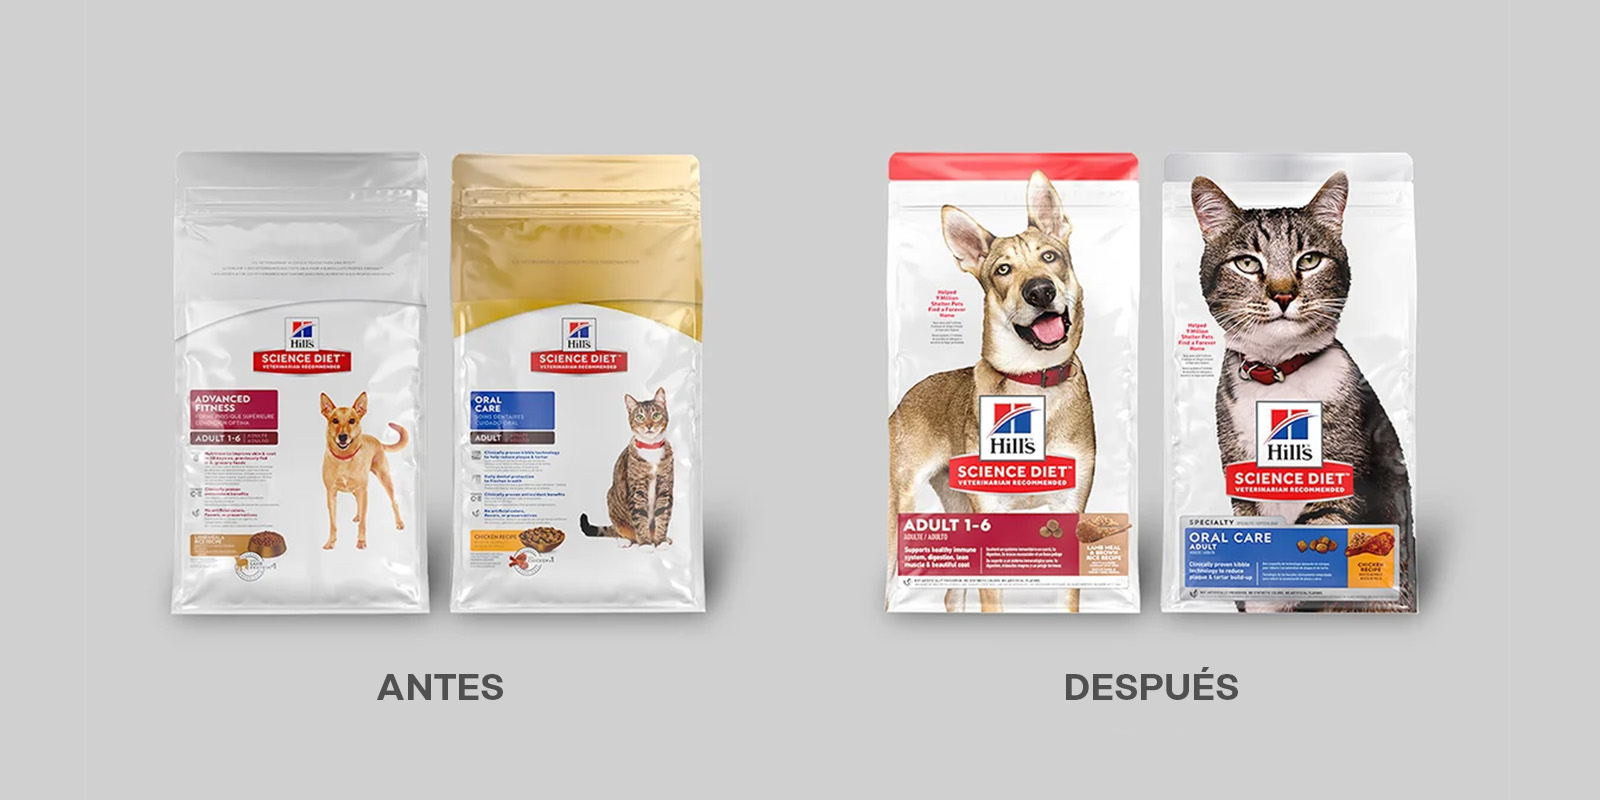 Antes y después del rediseño de packaging del alimento para mascotas Hill's Science Diet. El nuevo envase muestra imágenes más grandes y simpáticas de perros y gatos y un orden más claro de la información.